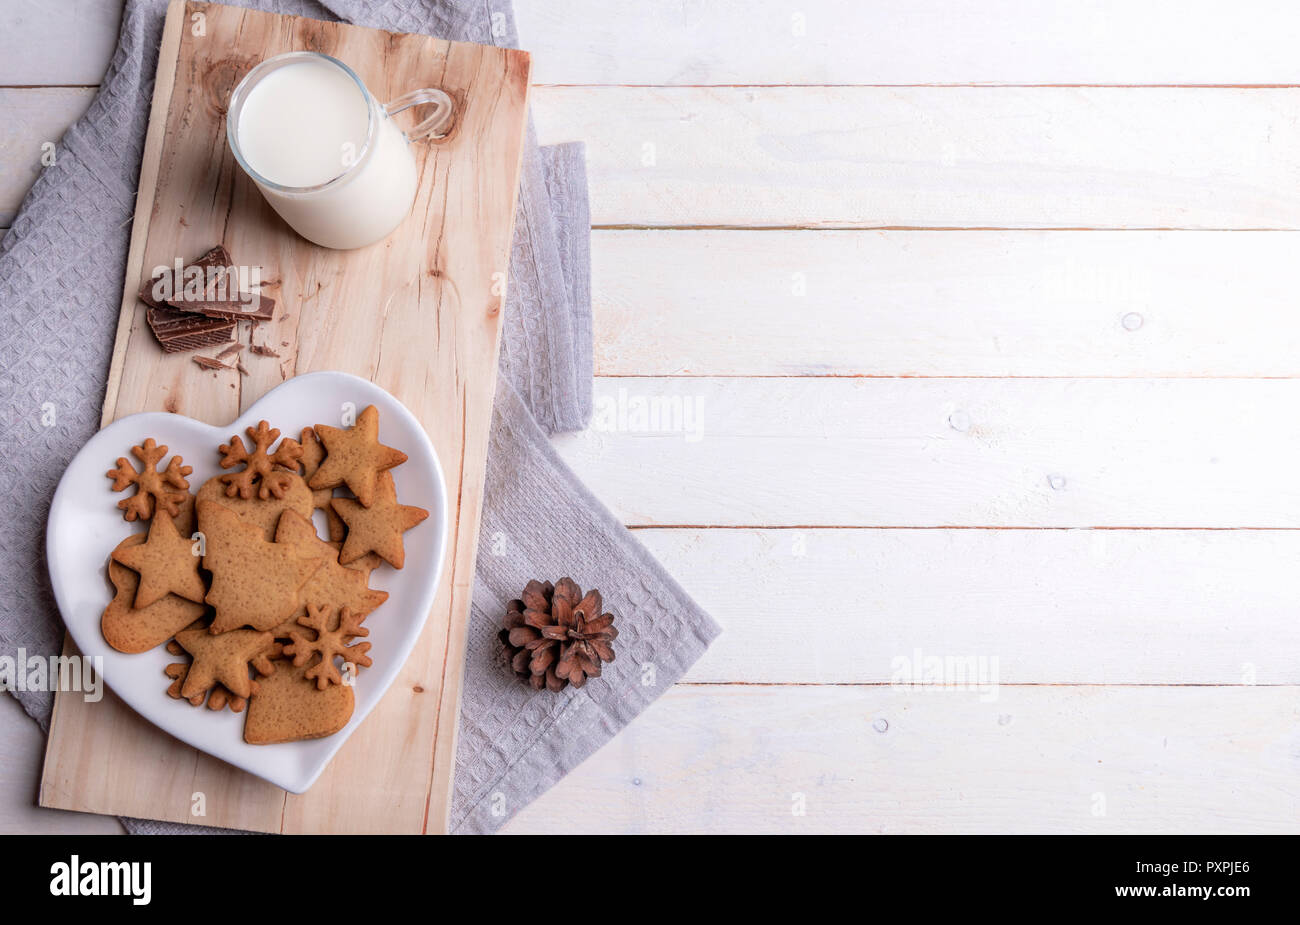 Weihnachten Frühstückstisch mit Lebkuchen Cookies auf eine herzförmige Platte, Schokolade und Milch, auf einer hölzernen Platte, auf einem weißen Holztisch. Stockfoto